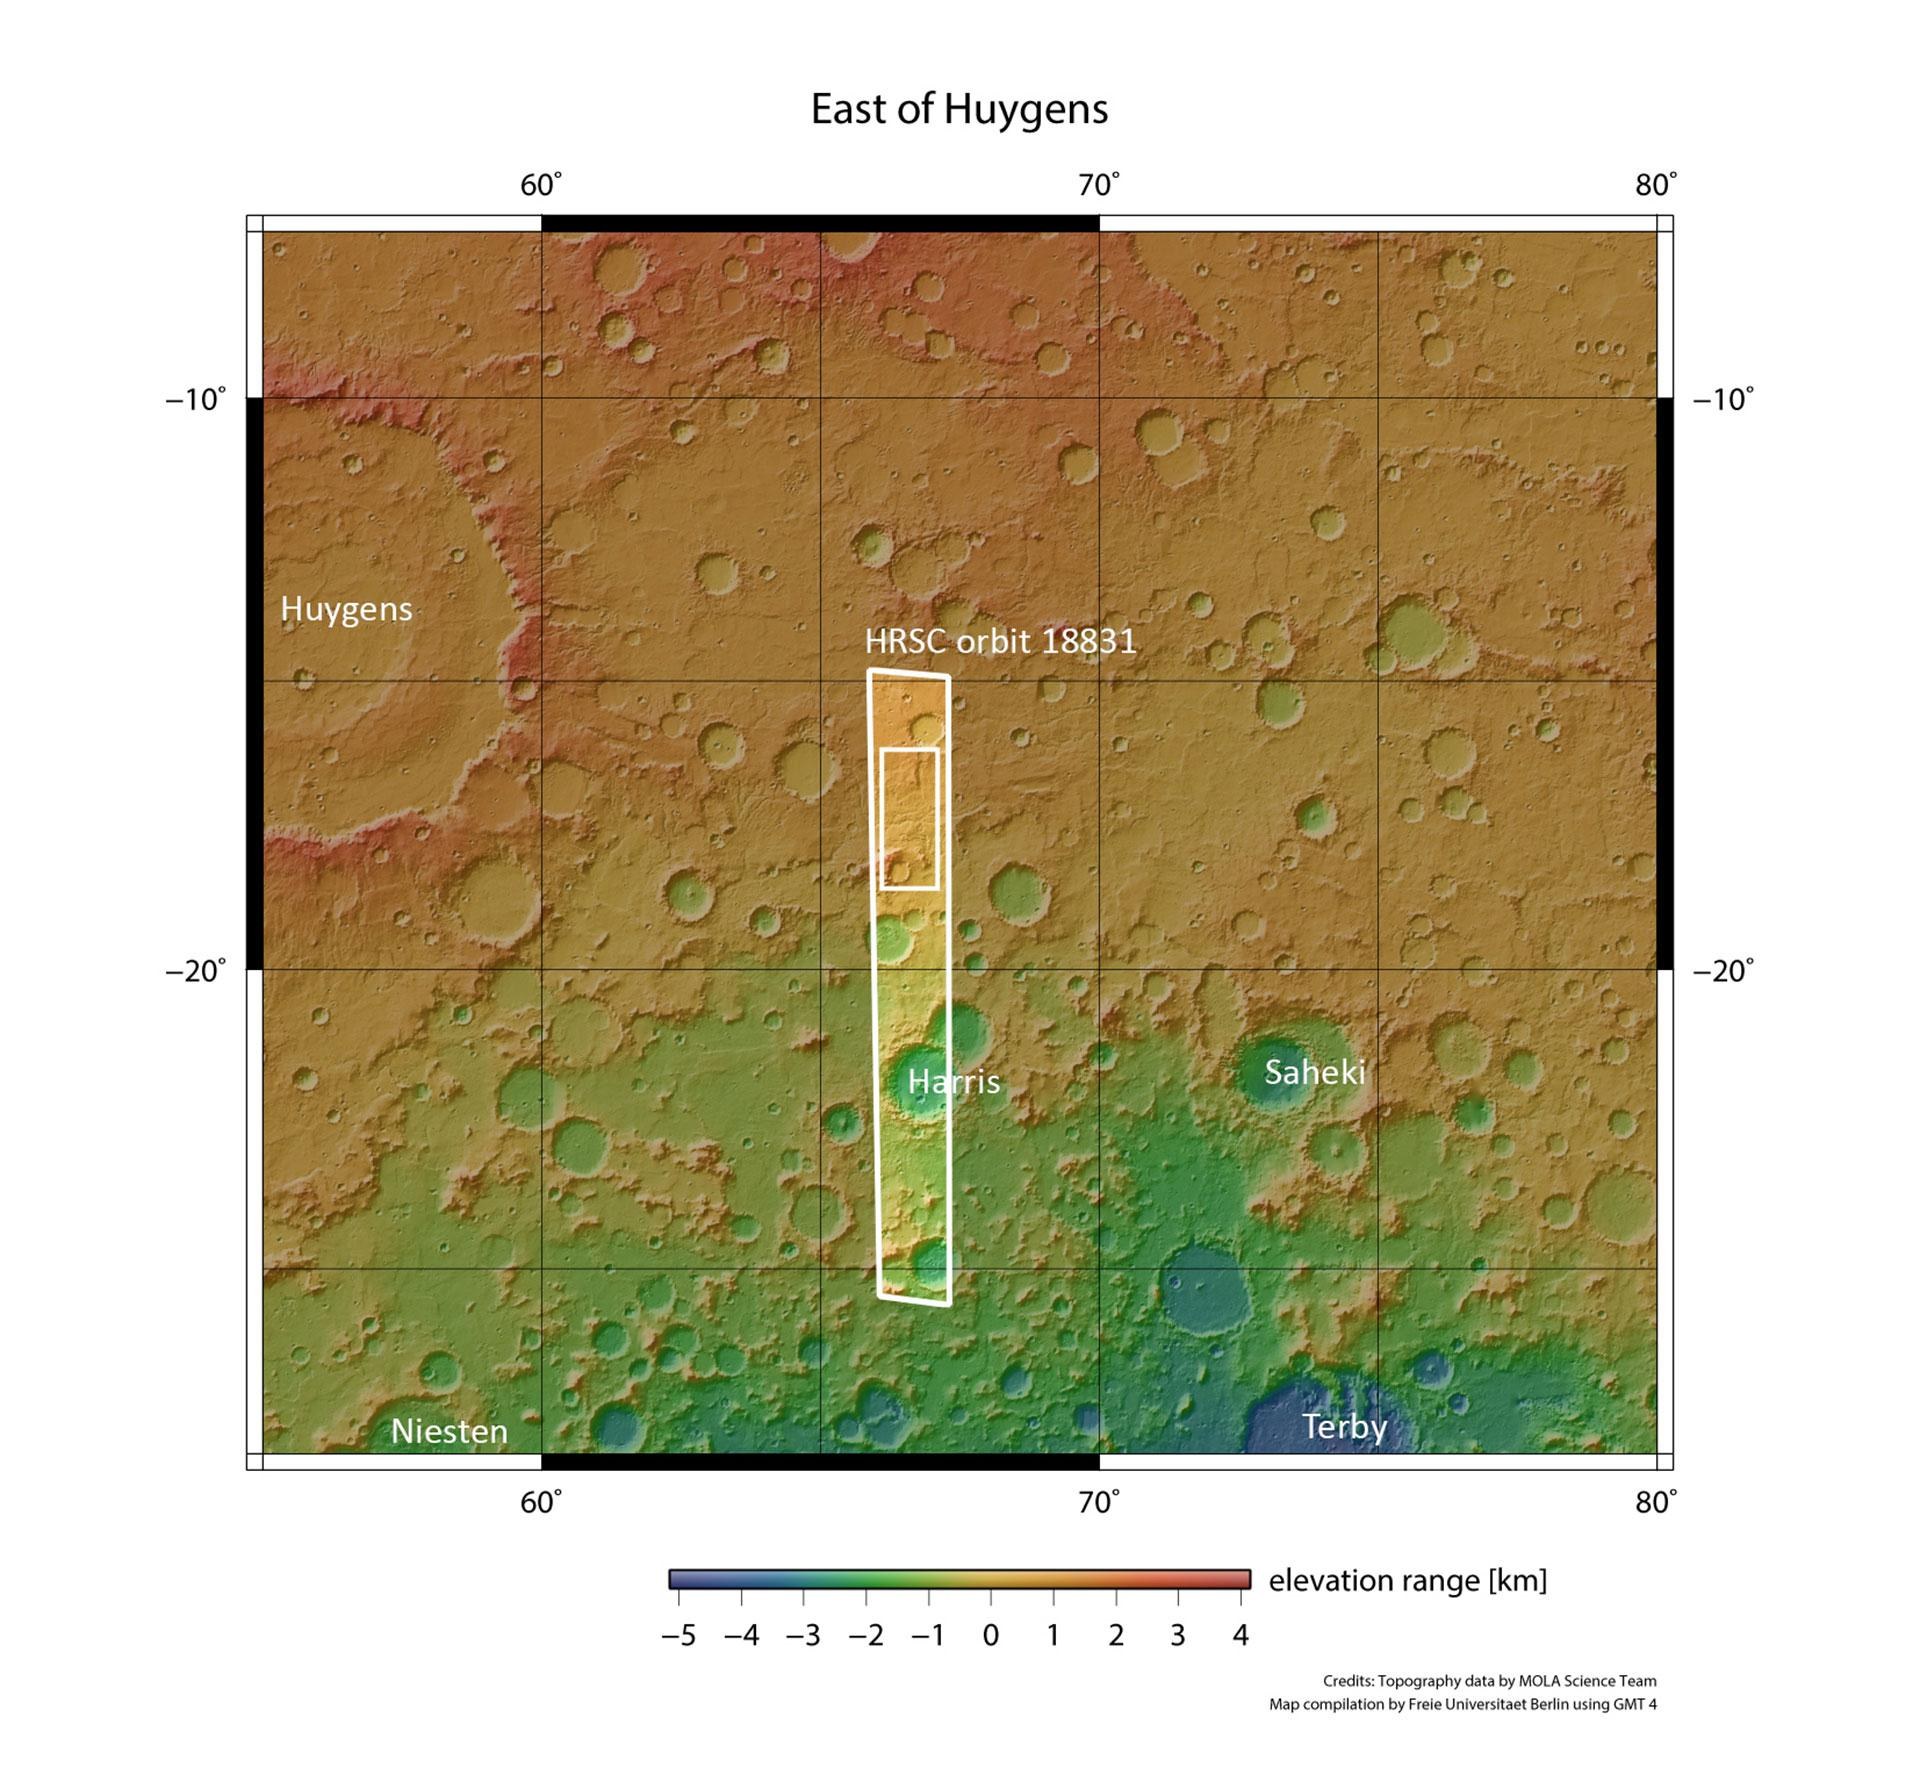 Topographische Übersichtskarte der Umgebung des Talnetzwerks östlich des Kraters Huygens